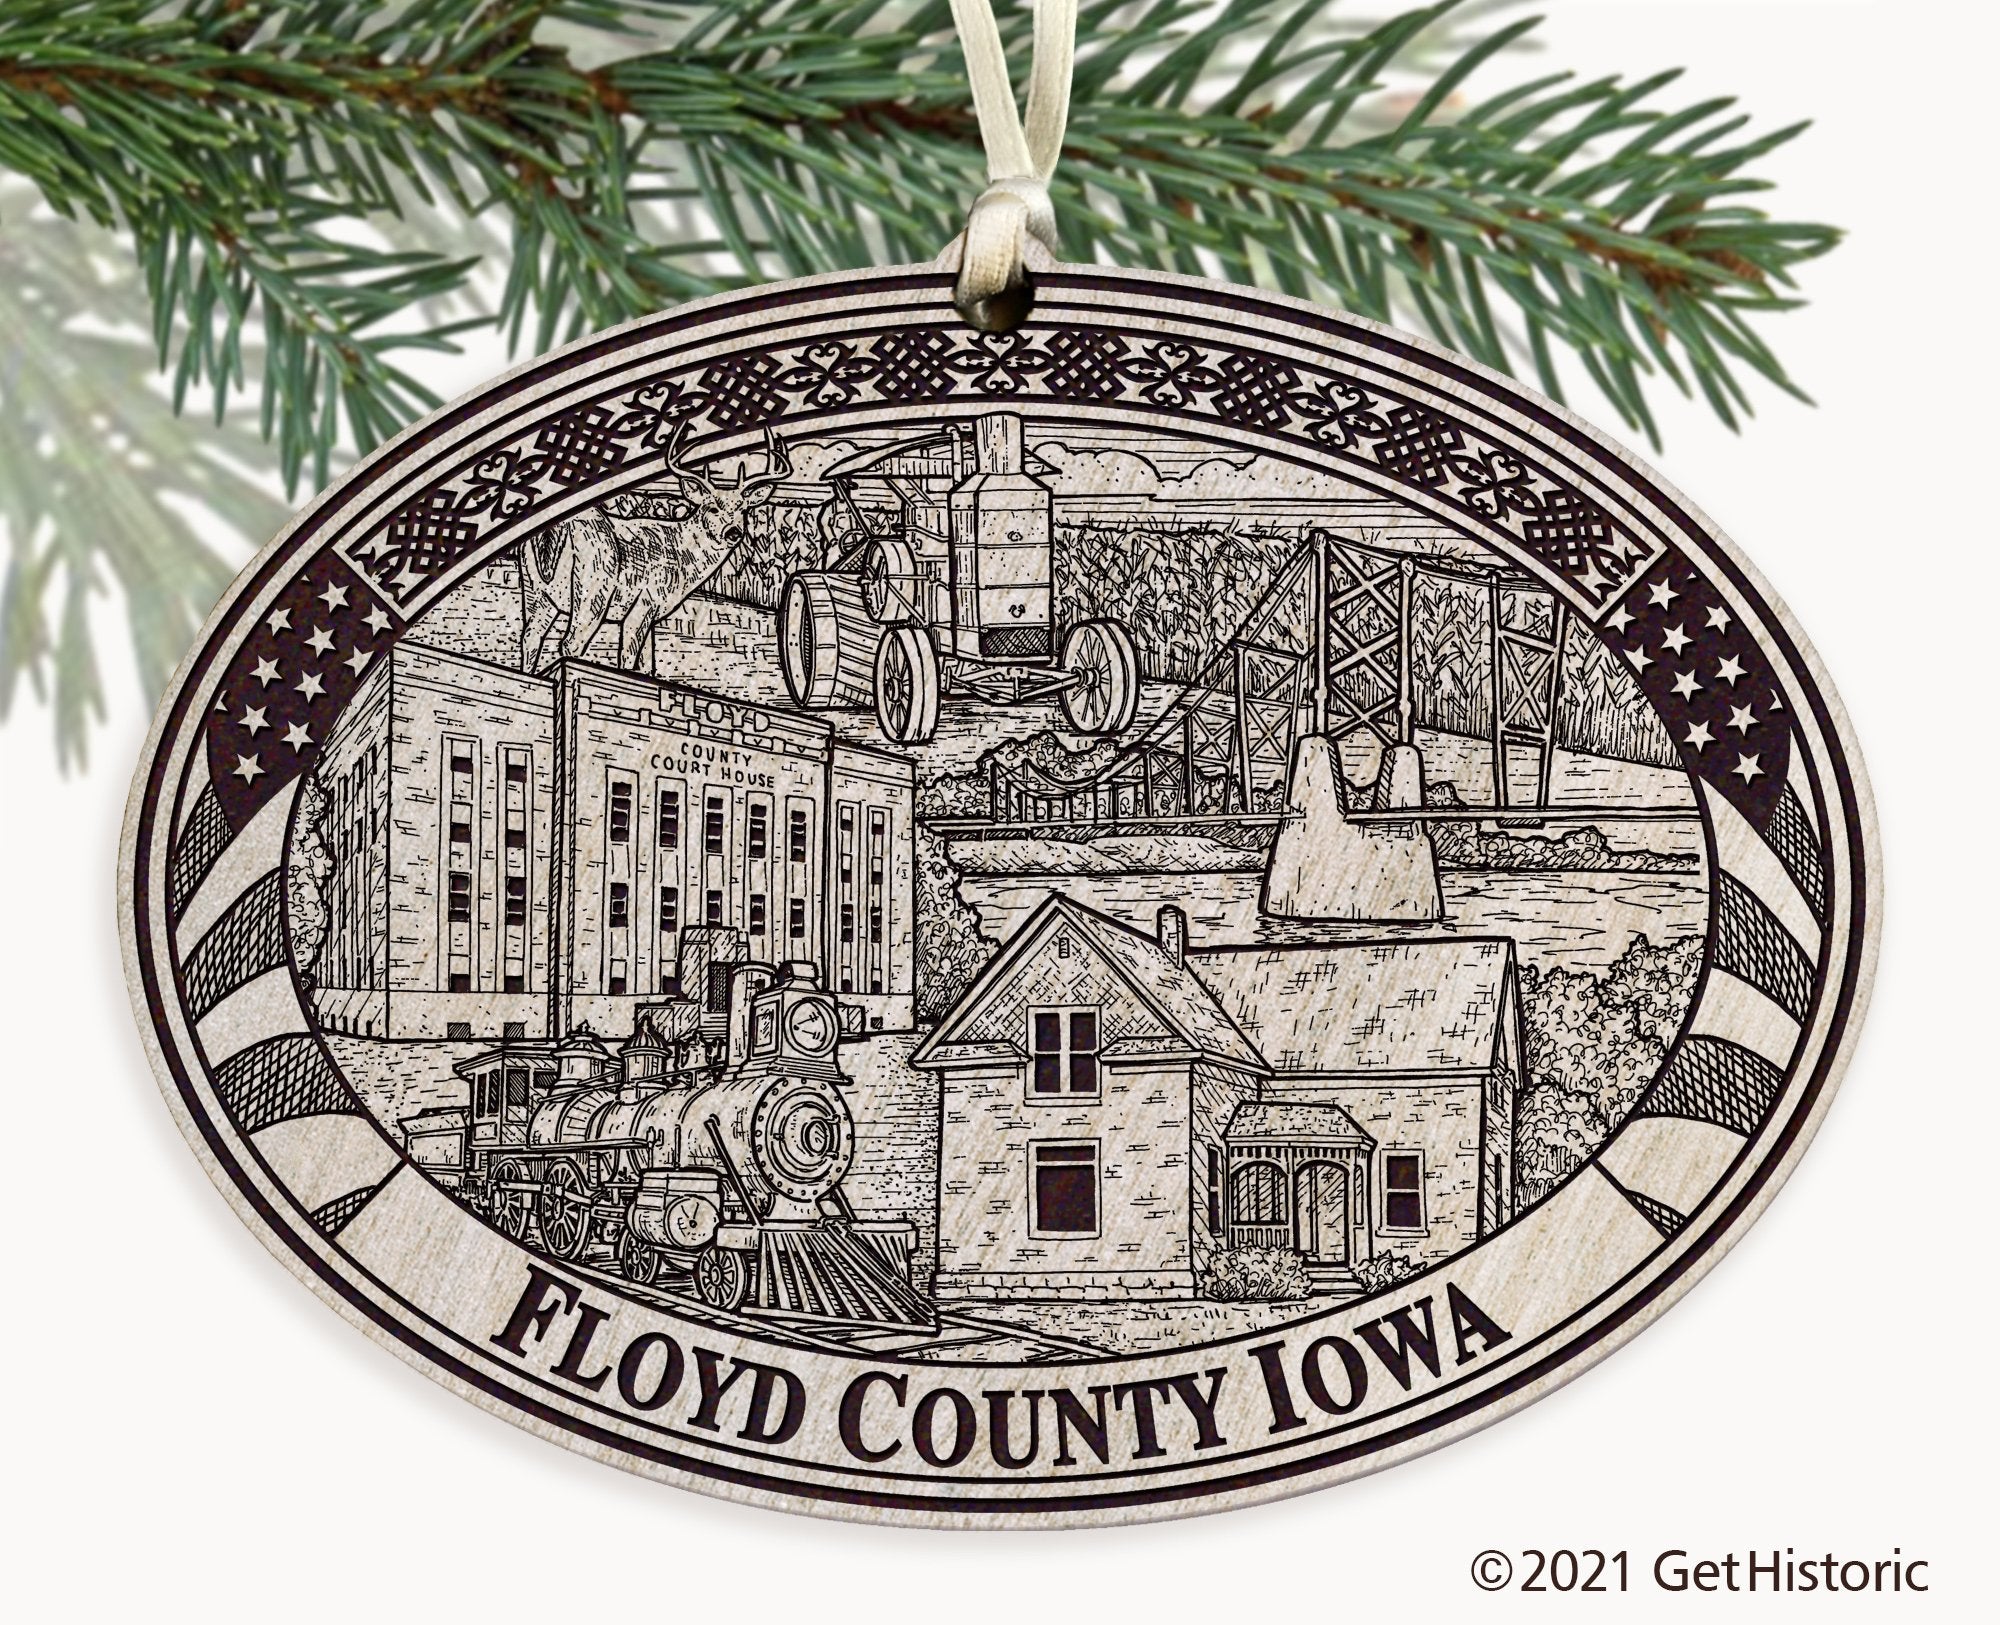 Floyd County Iowa Engraved Ornament